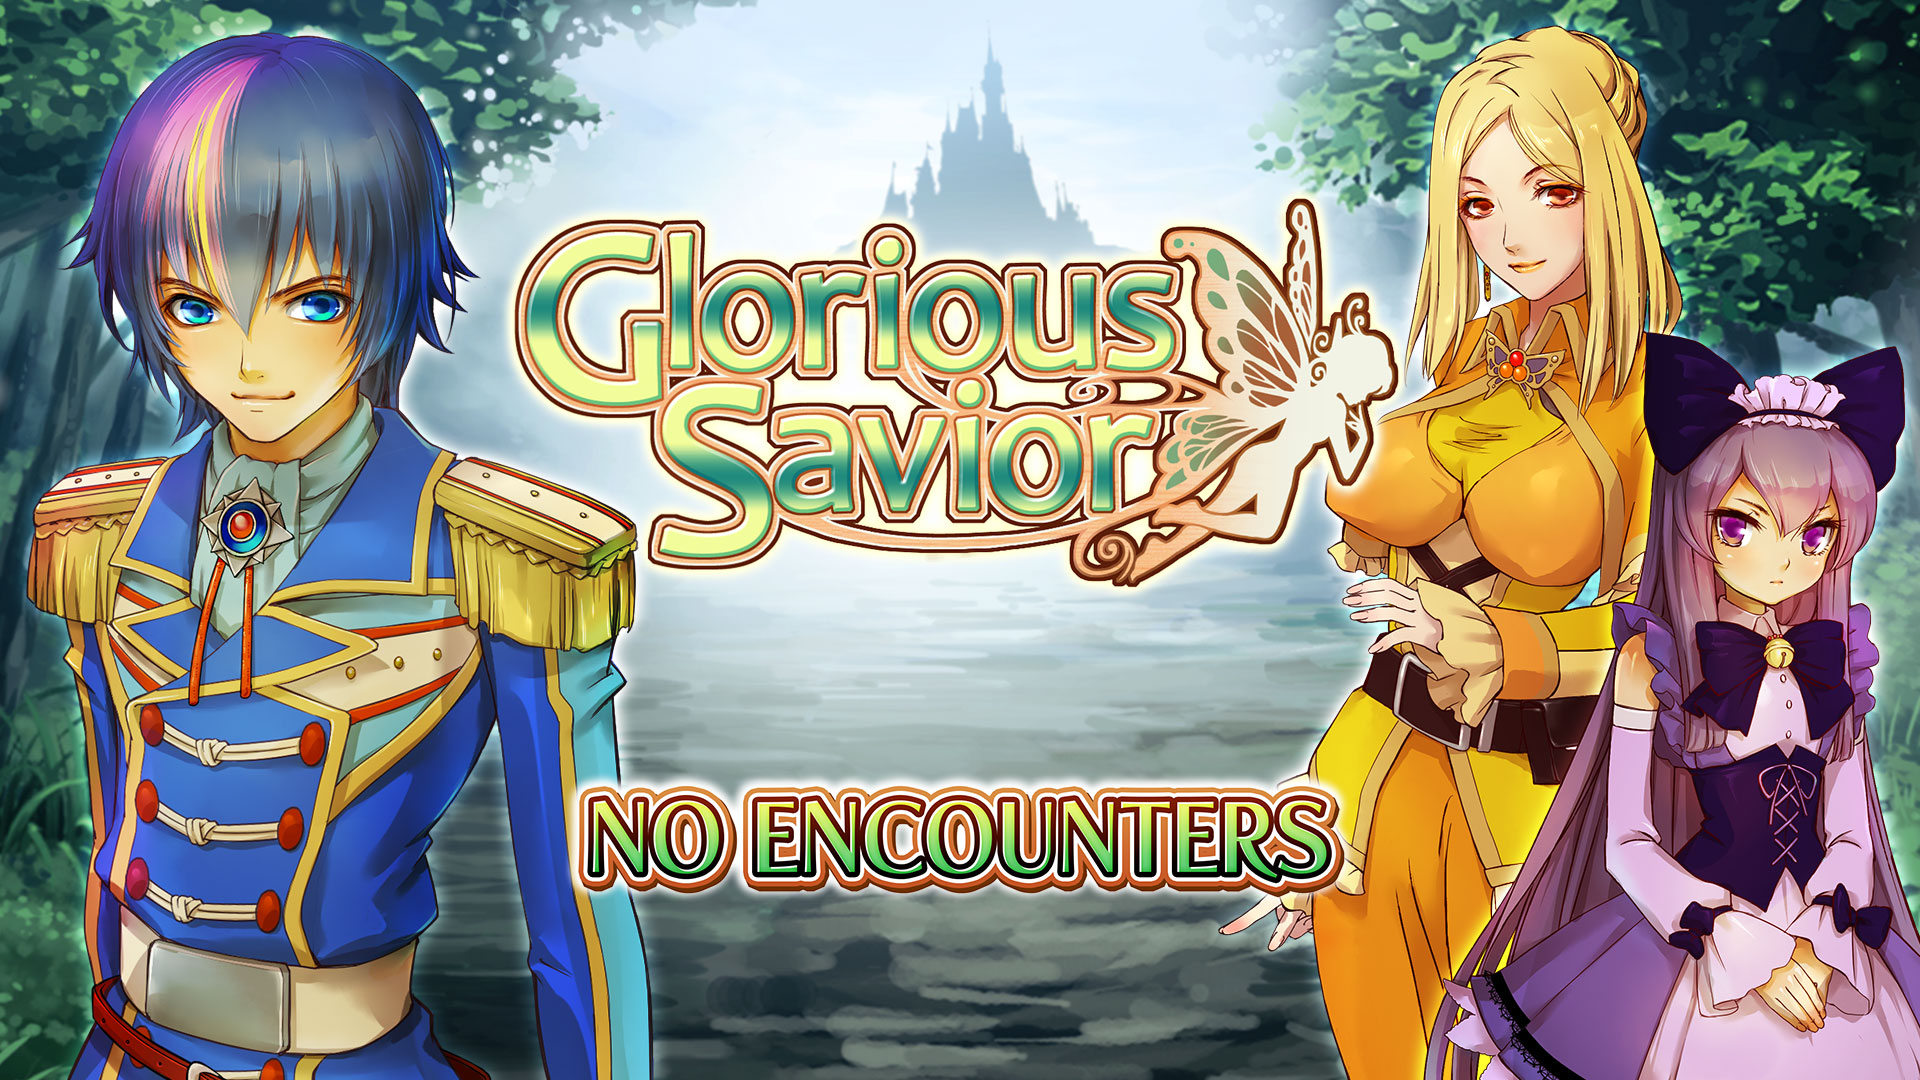 No Encounters - Glorious Savior